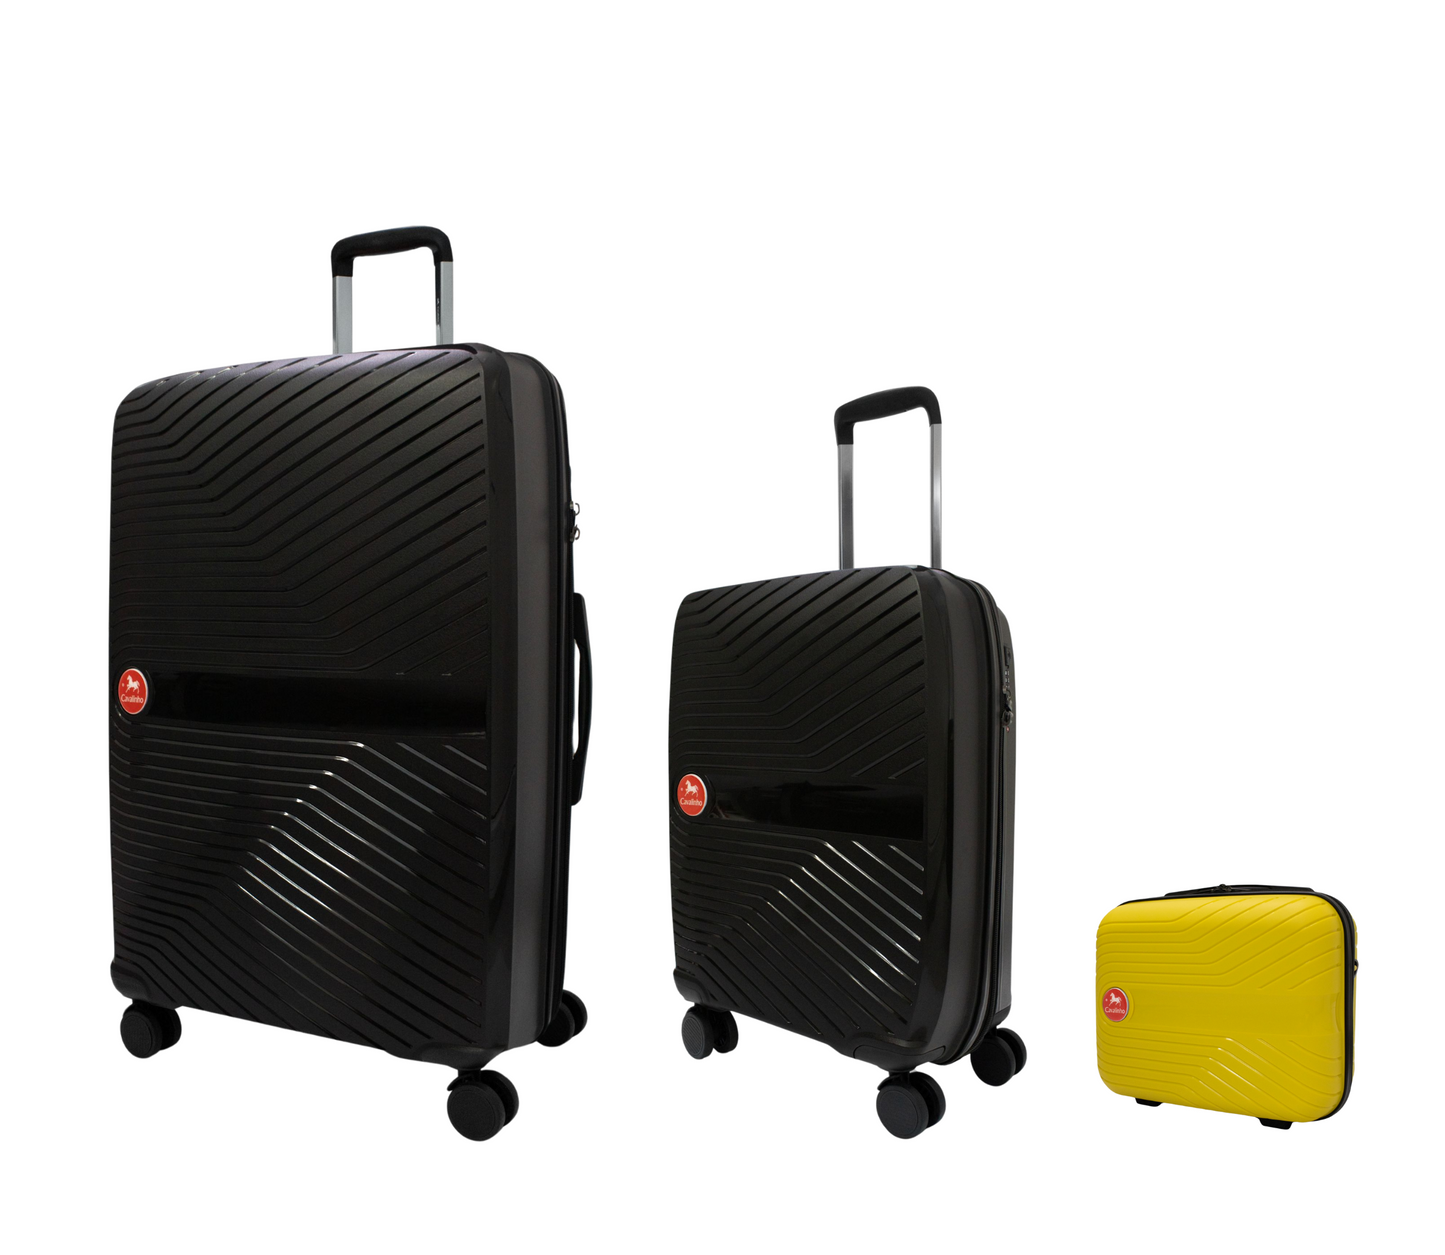 #color_ Yellow Black Black | Cavalinho Canada & USA Colorful 3 Piece Luggage Set (15", 19" & 28") - Yellow Black Black - 68020004.080101.S151928._2